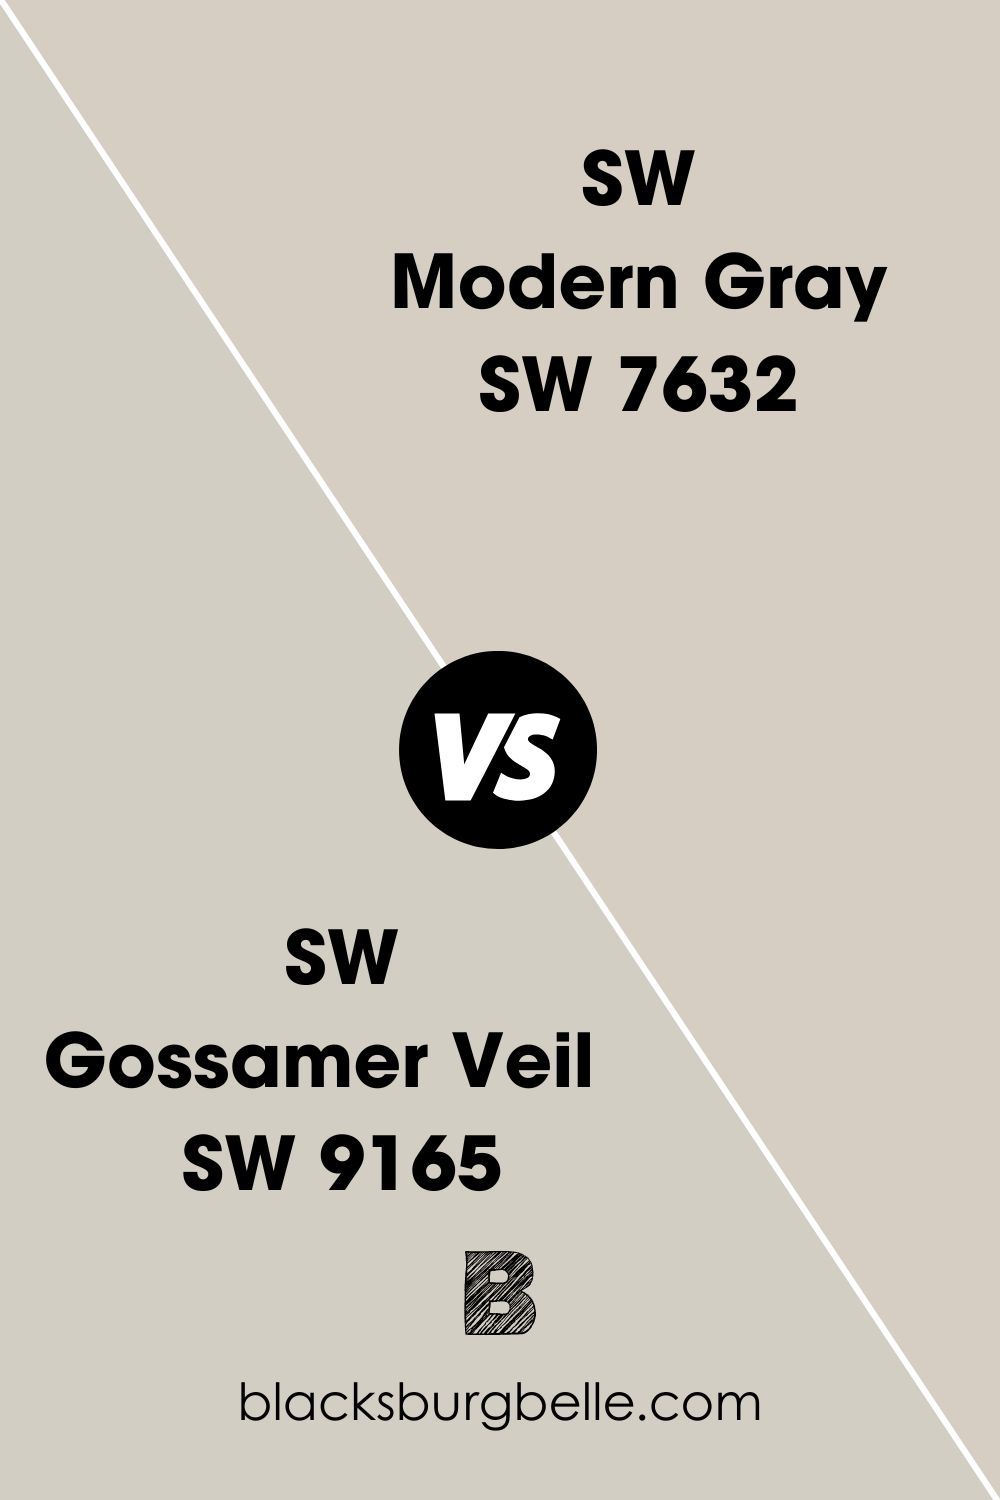 SW Modern Gray vs SW Gossamer Veil